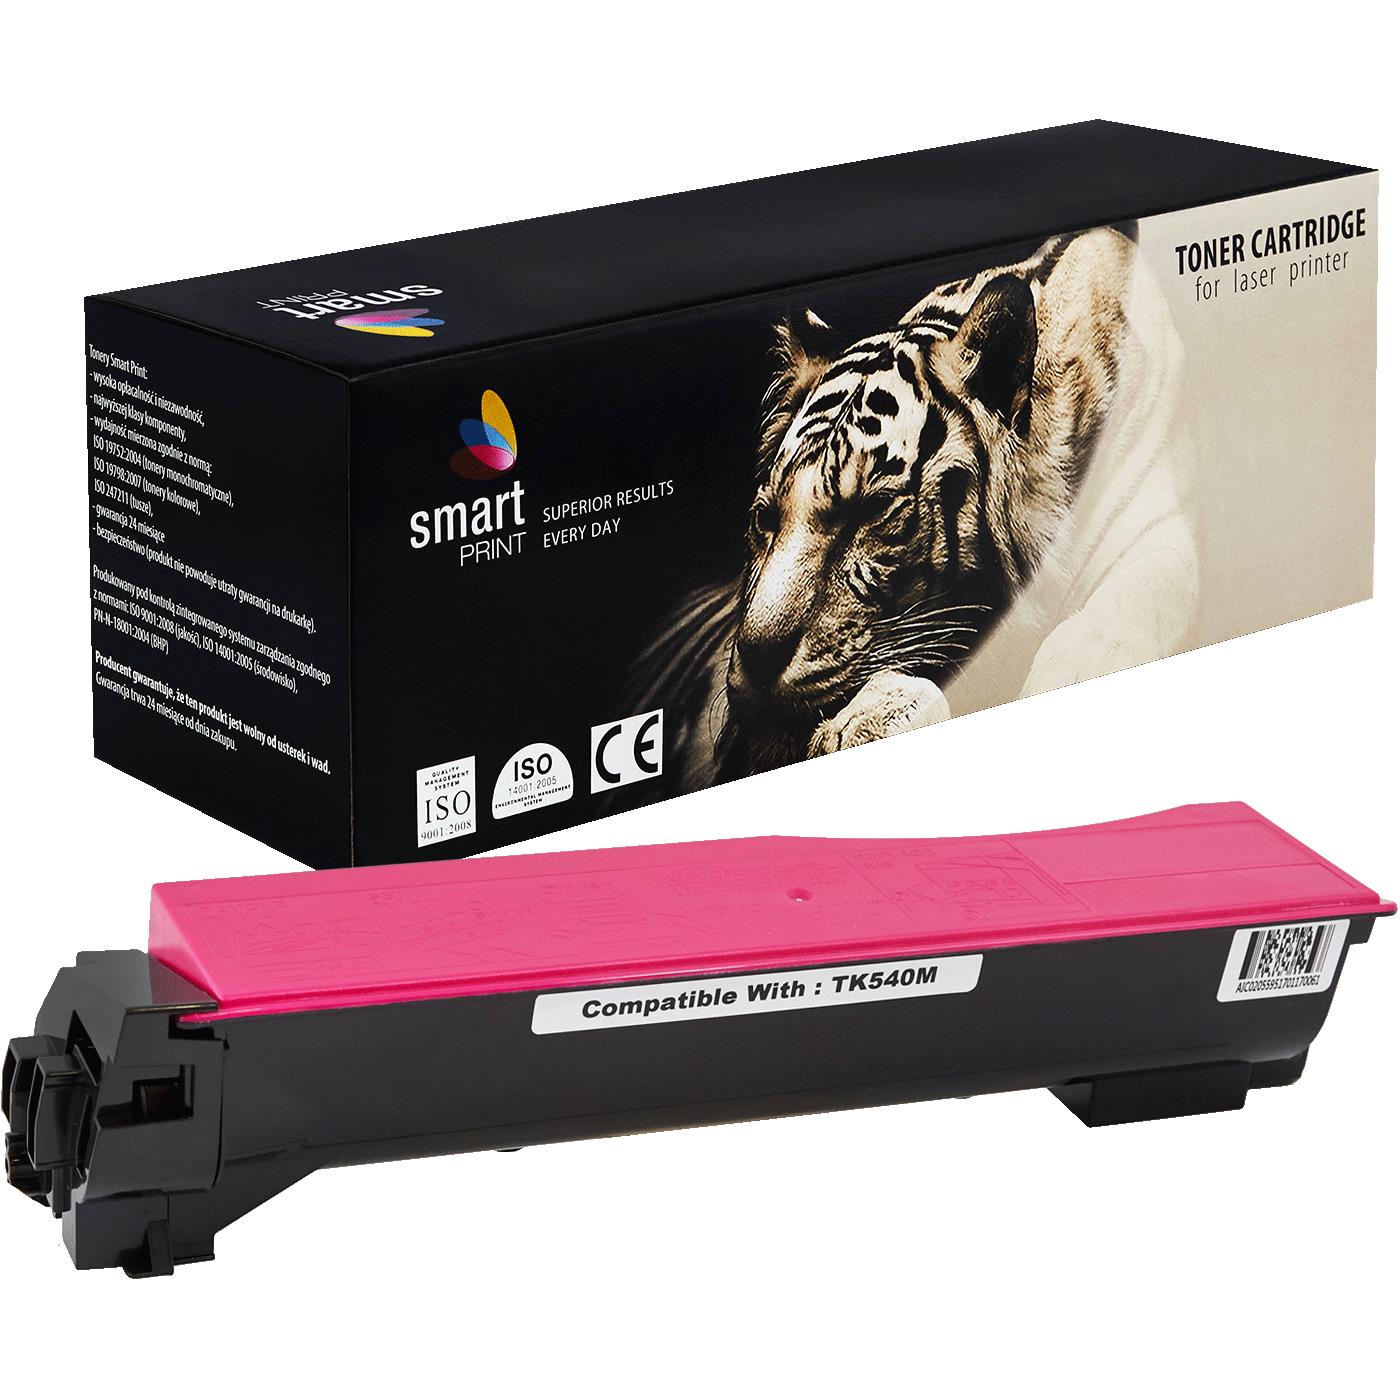 съвместима тонер касета за принтери и печатащи устройства на Kyocera Mita Kyocera: FS-C 5100 DN,  Mita FS-C 5100 DN,  new new Toner KY-TK540M TK540M. Ниски цени, прецизно изпълнение, високо качество.